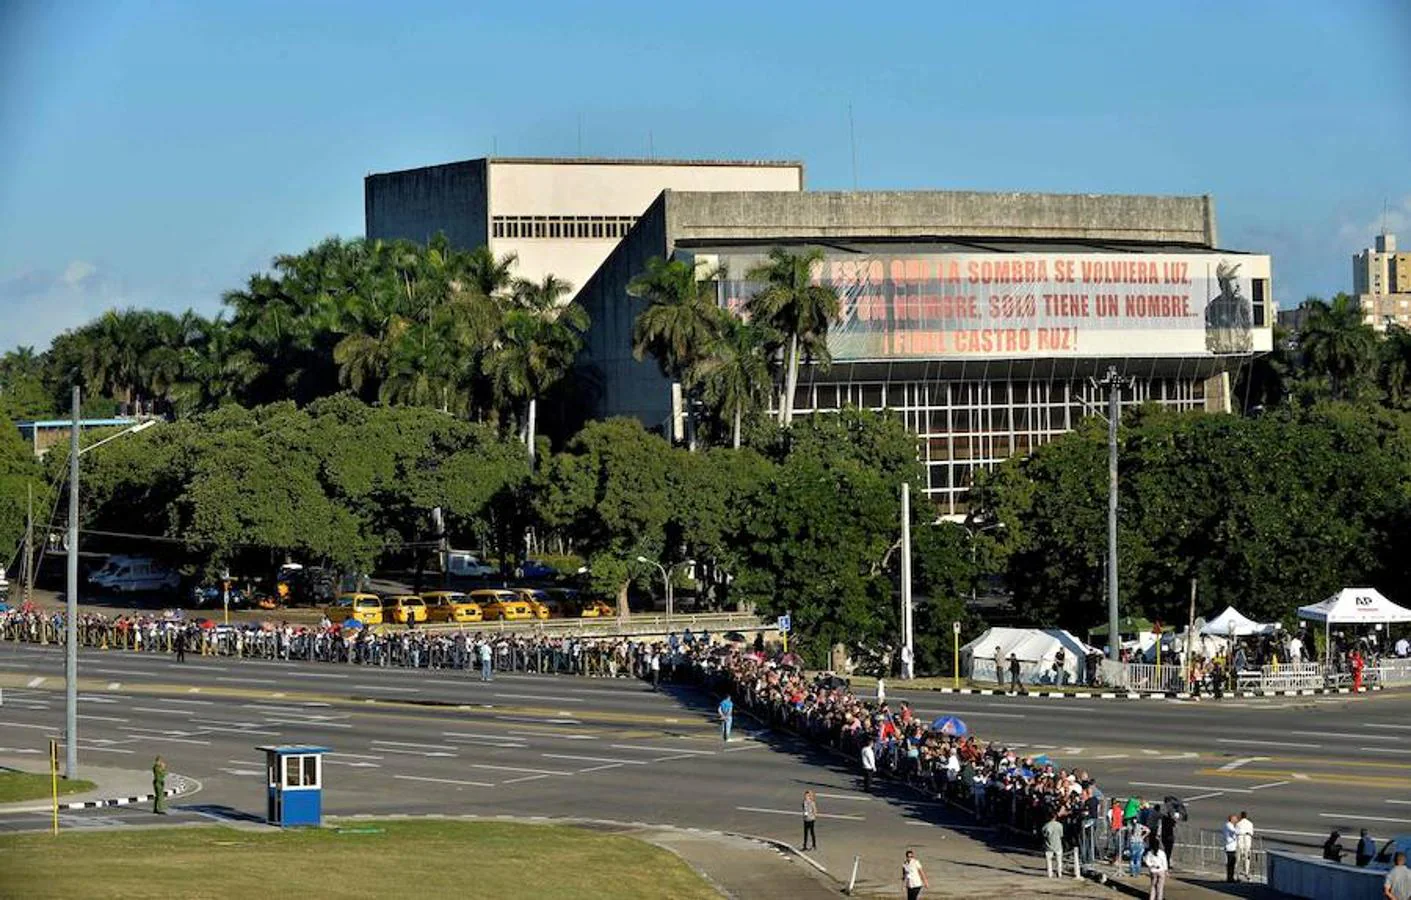 Los cubanos han hecho colas de más de tres horas para entrar al memorial de Fidel Castro desde primera hora de la mañana